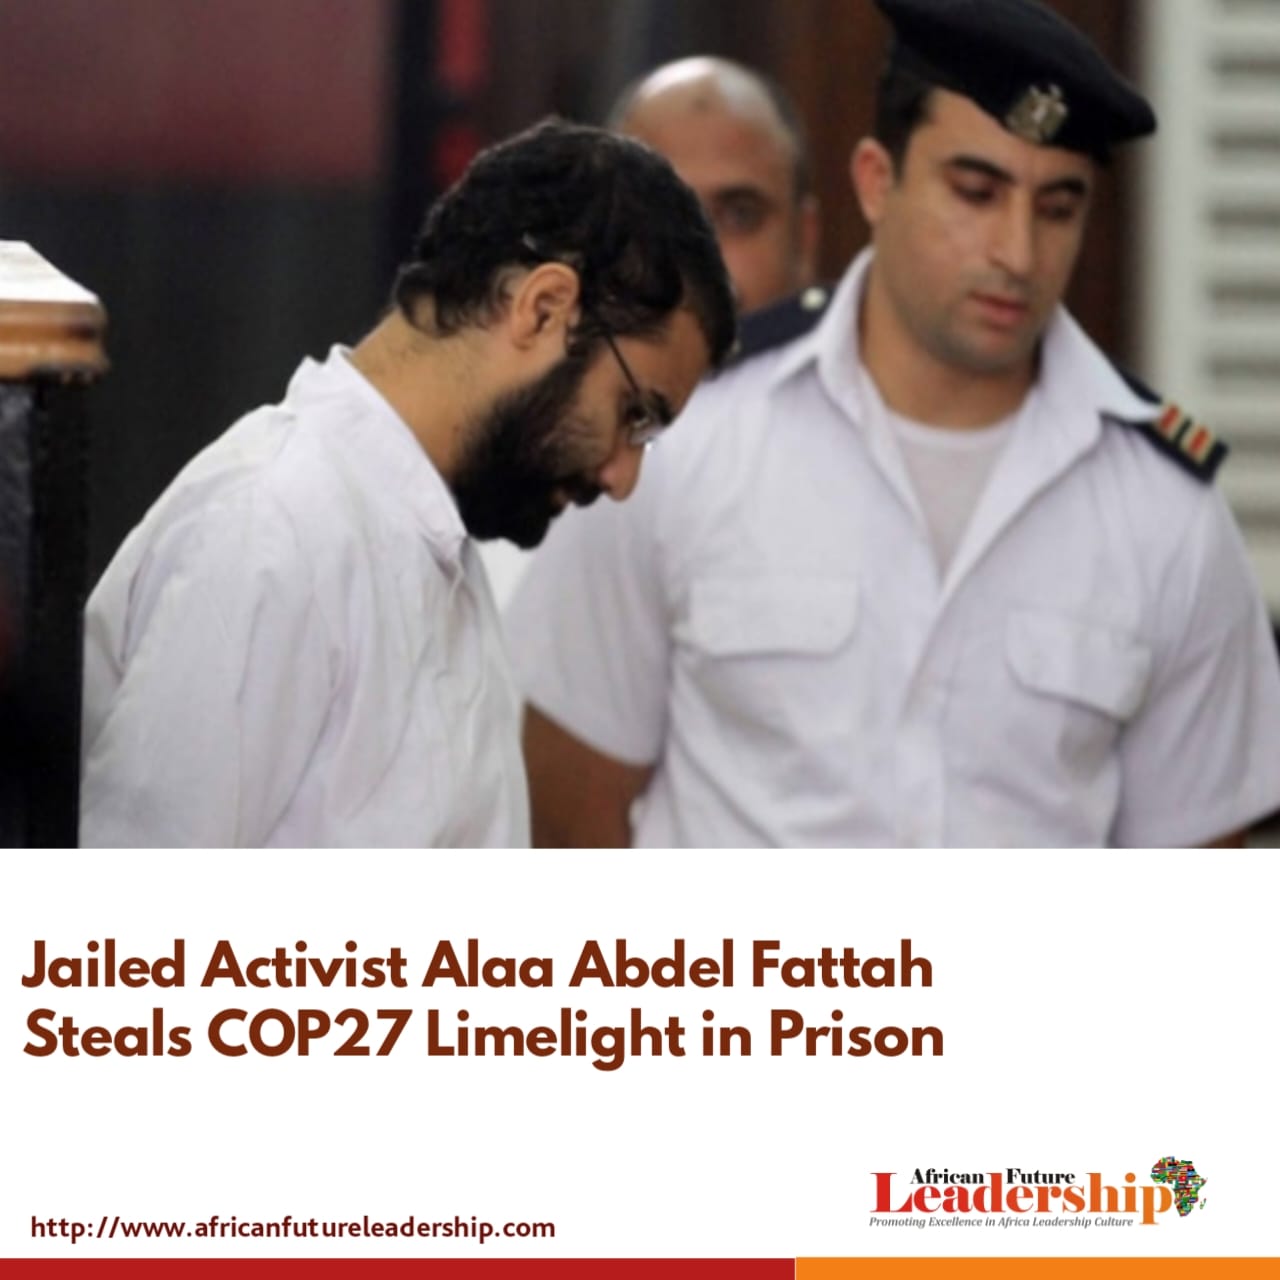 Jailed Activist Alaa Abdel Fattah Steals COP27 Limelight in Prison